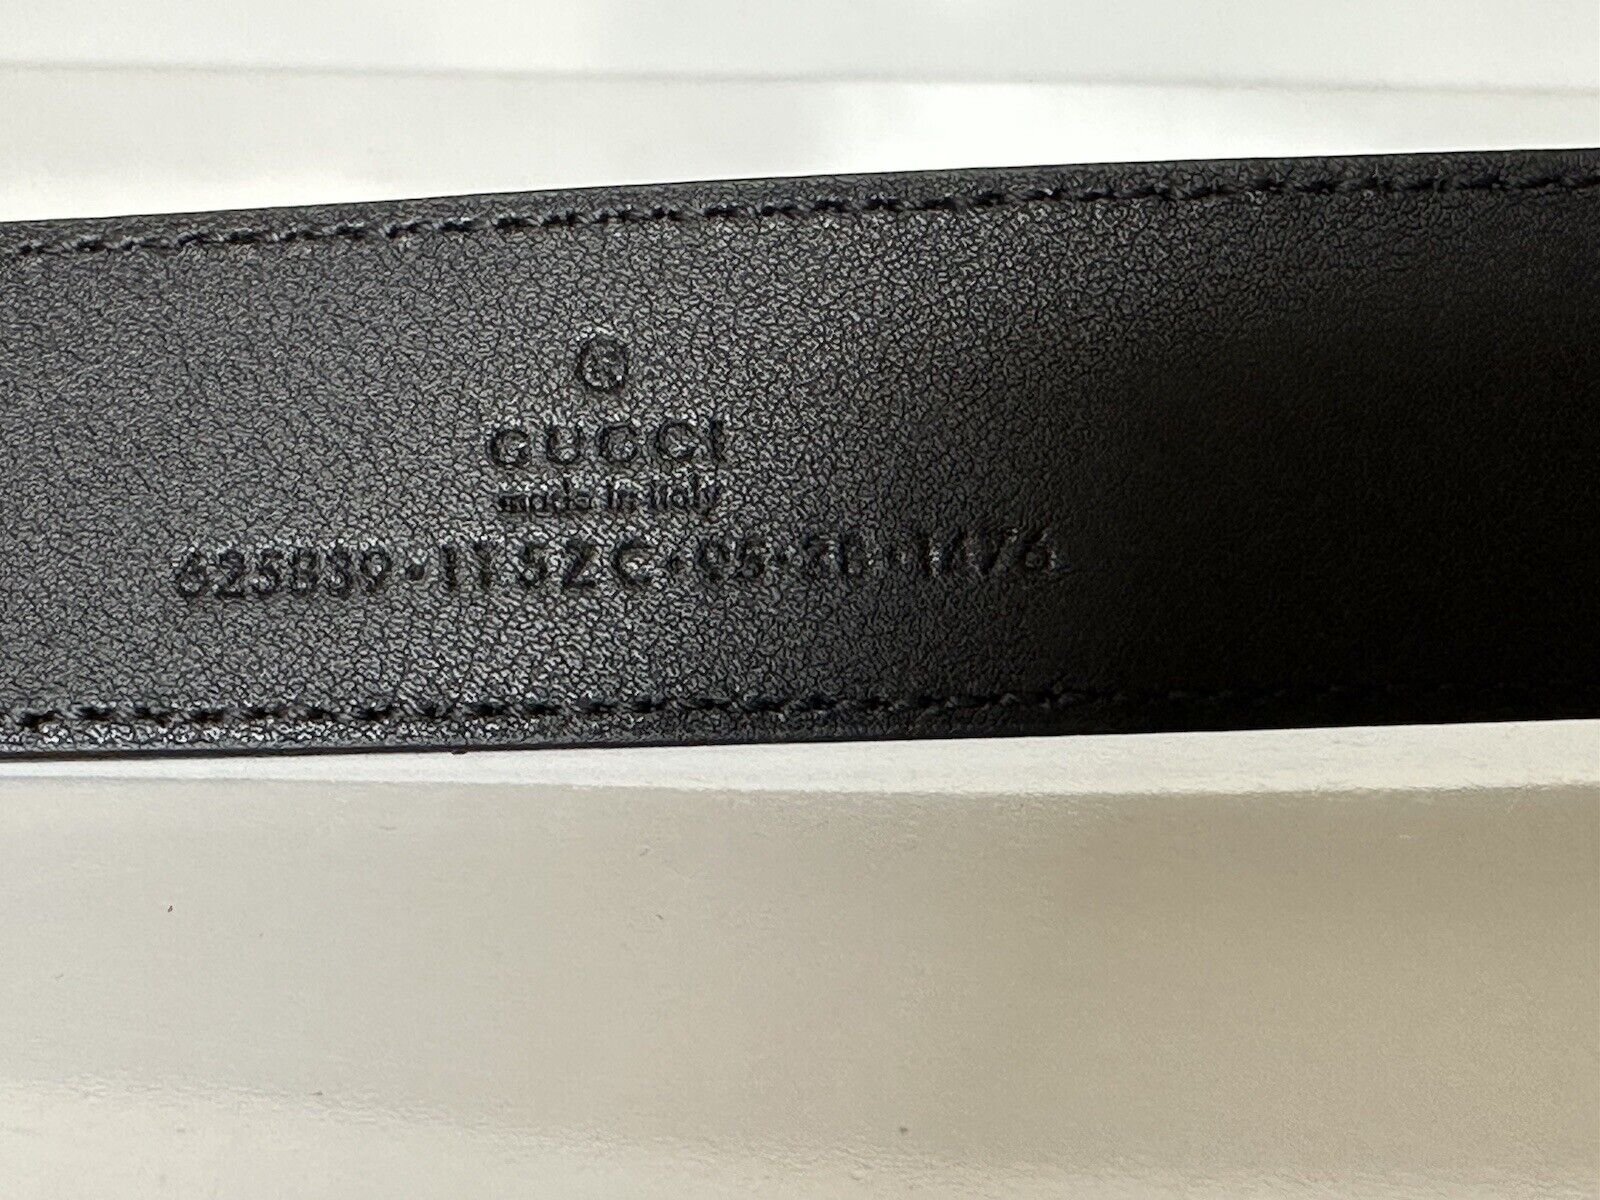 Новый женский кожаный ремень Gucci GG Marmont, черный 95/38, Италия 625839 